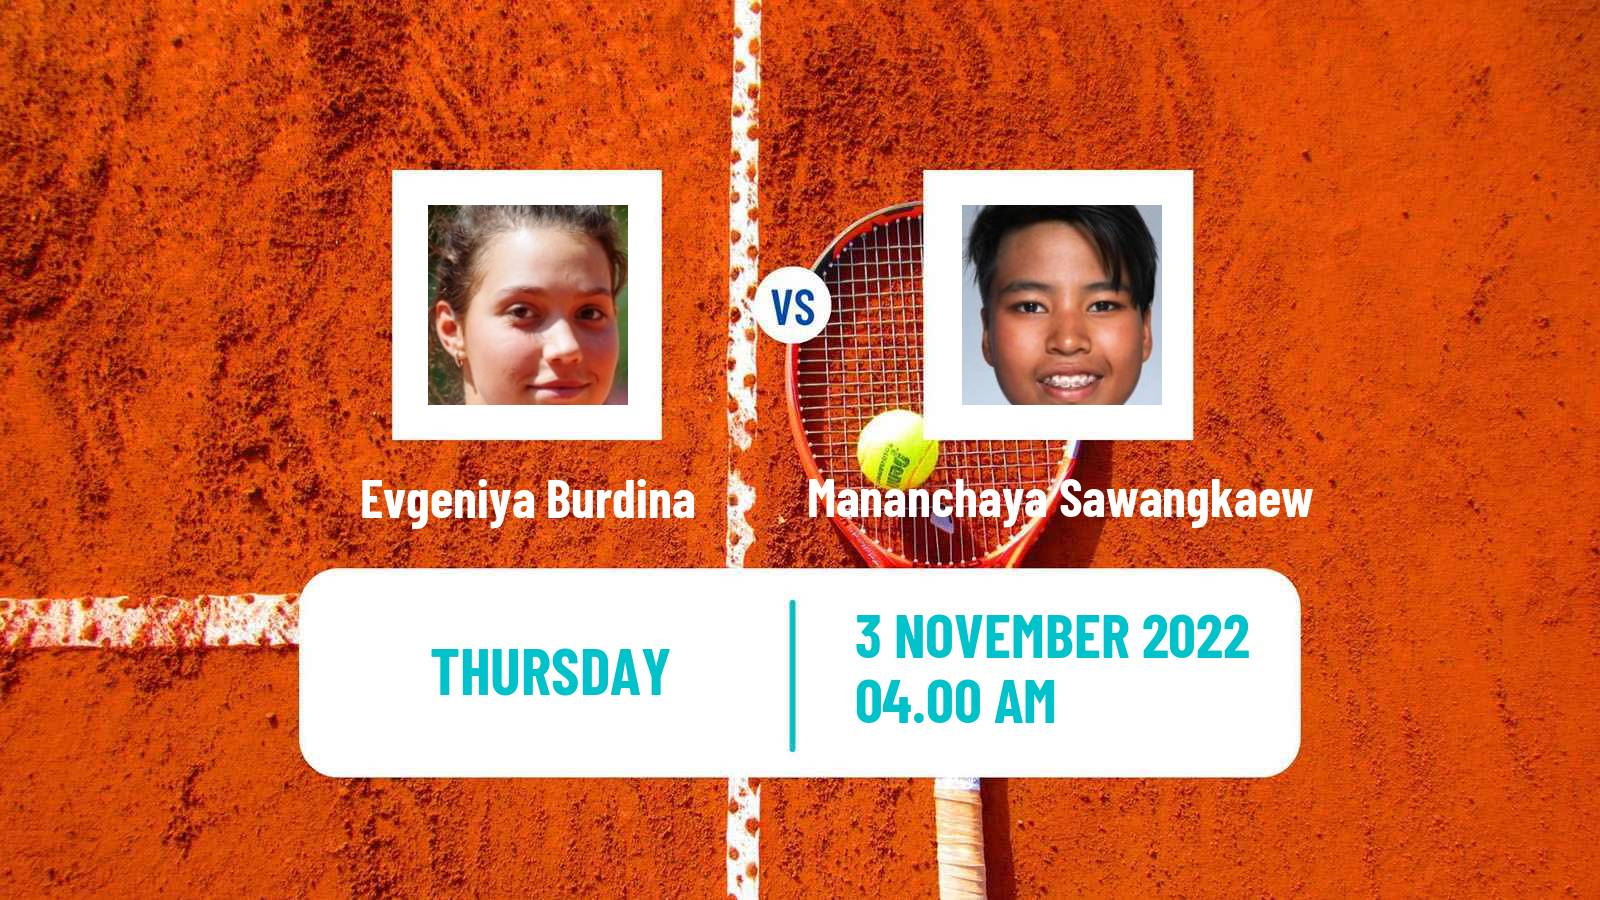 Tennis ITF Tournaments Evgeniya Burdina - Mananchaya Sawangkaew